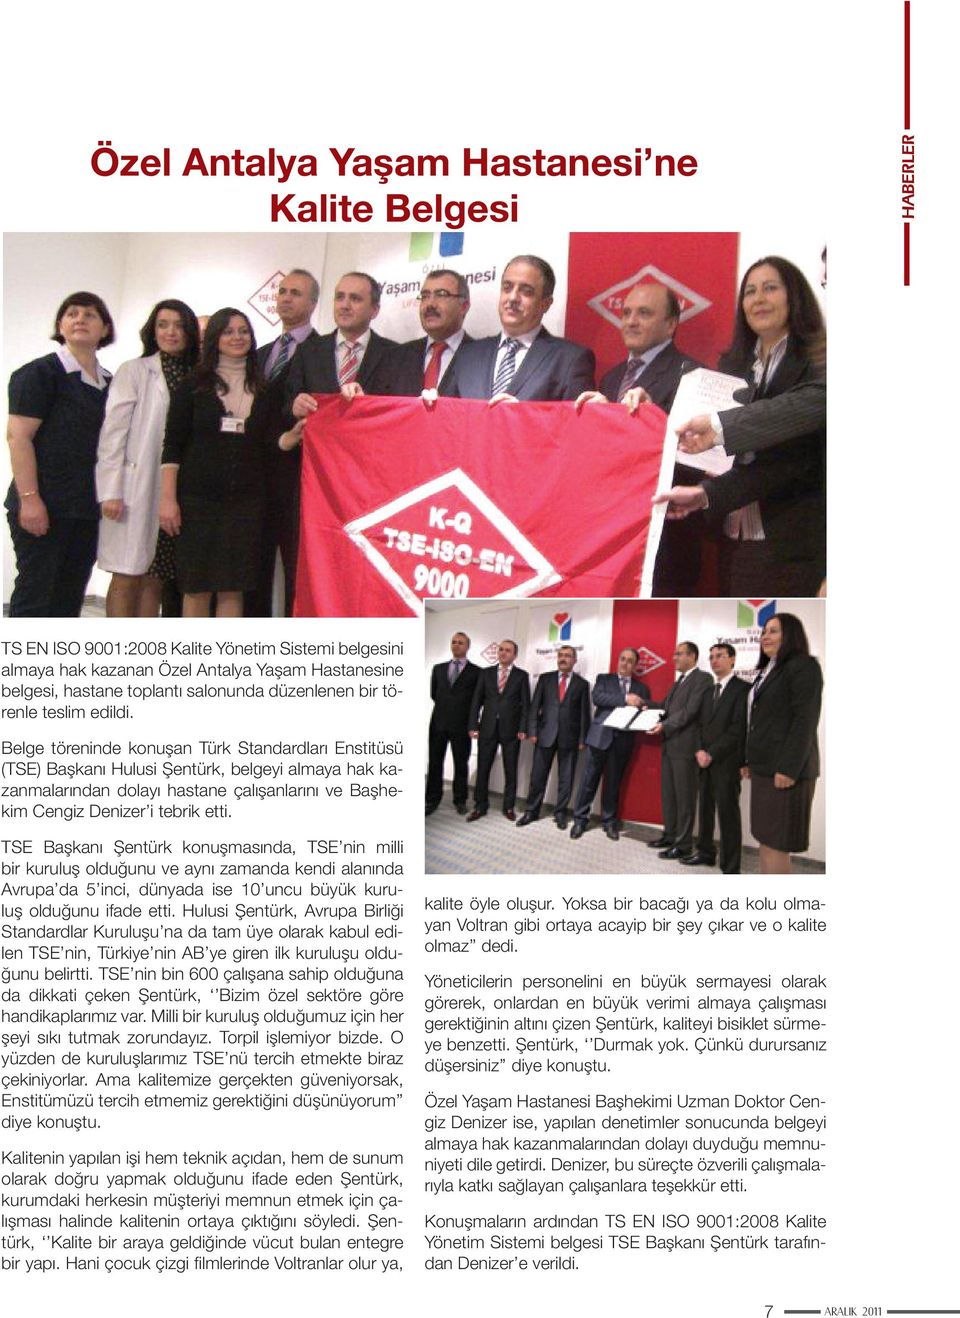 Belge töreninde konuşan Türk Standardları Enstitüsü (TSE) Başkanı Hulusi Şentürk, belgeyi almaya hak kazanmalarından dolayı hastane çalışanlarını ve Başhekim Cengiz Denizer i tebrik etti.